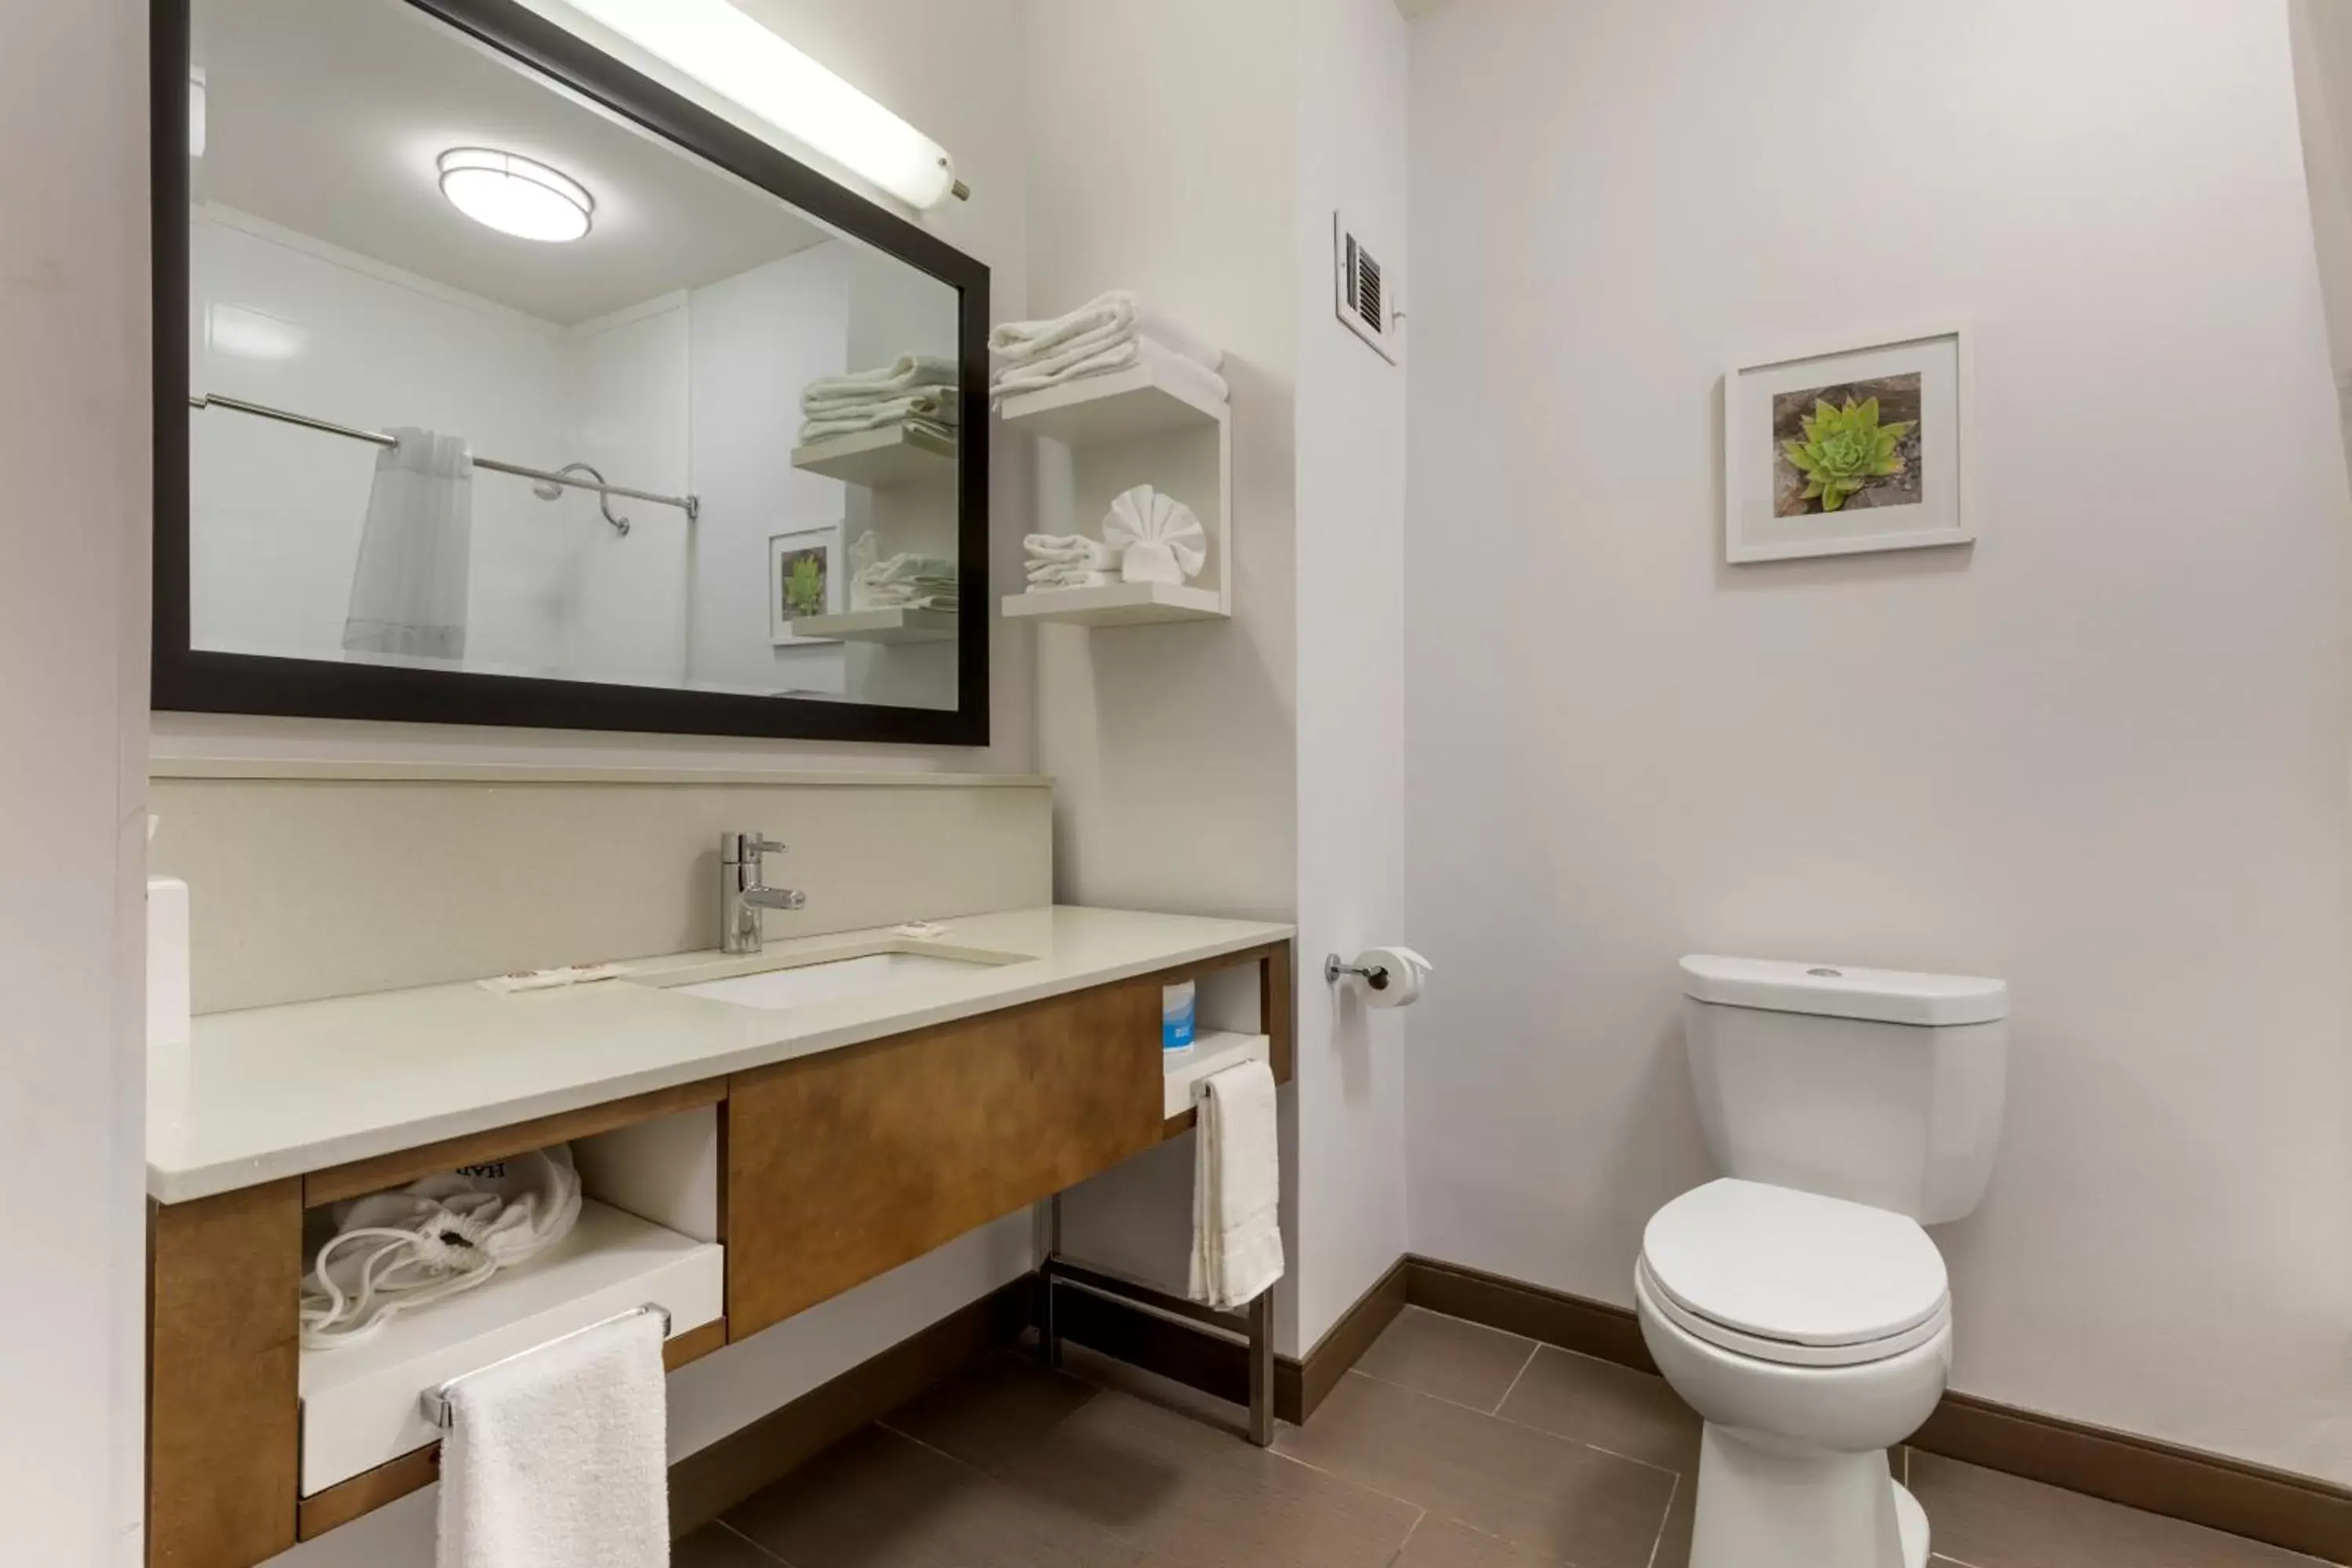 Bathroom in Comfort Inn - Weatherford